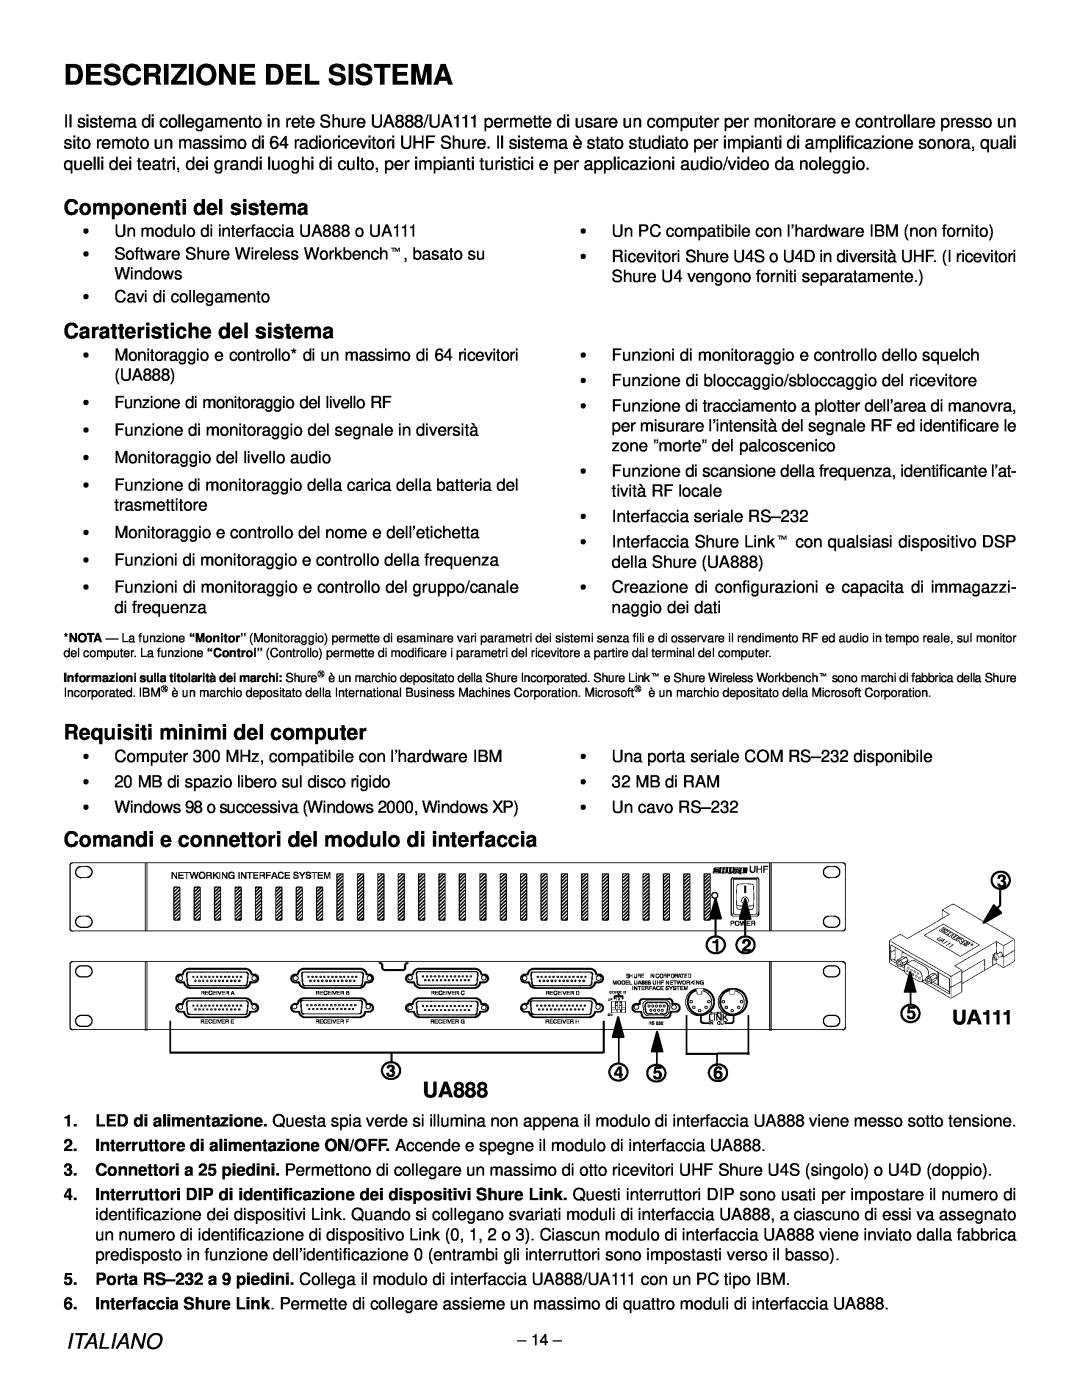 Shure UA888, UA111 manual Componenti del sistema, Caratteristiche del sistema, Requisiti minimi del computer, Italiano 